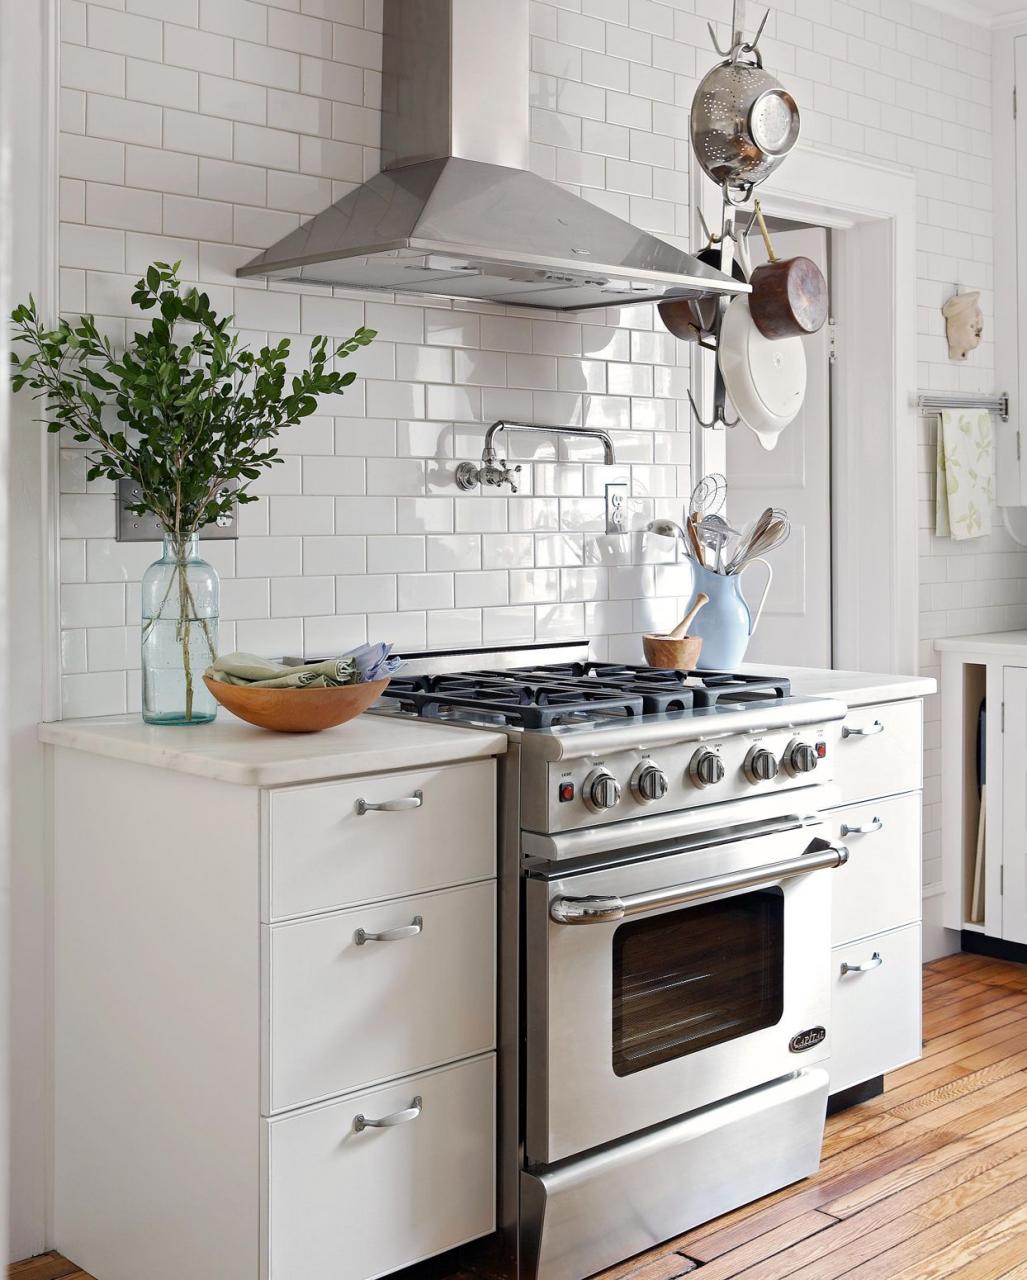 white kitchen stove oven range